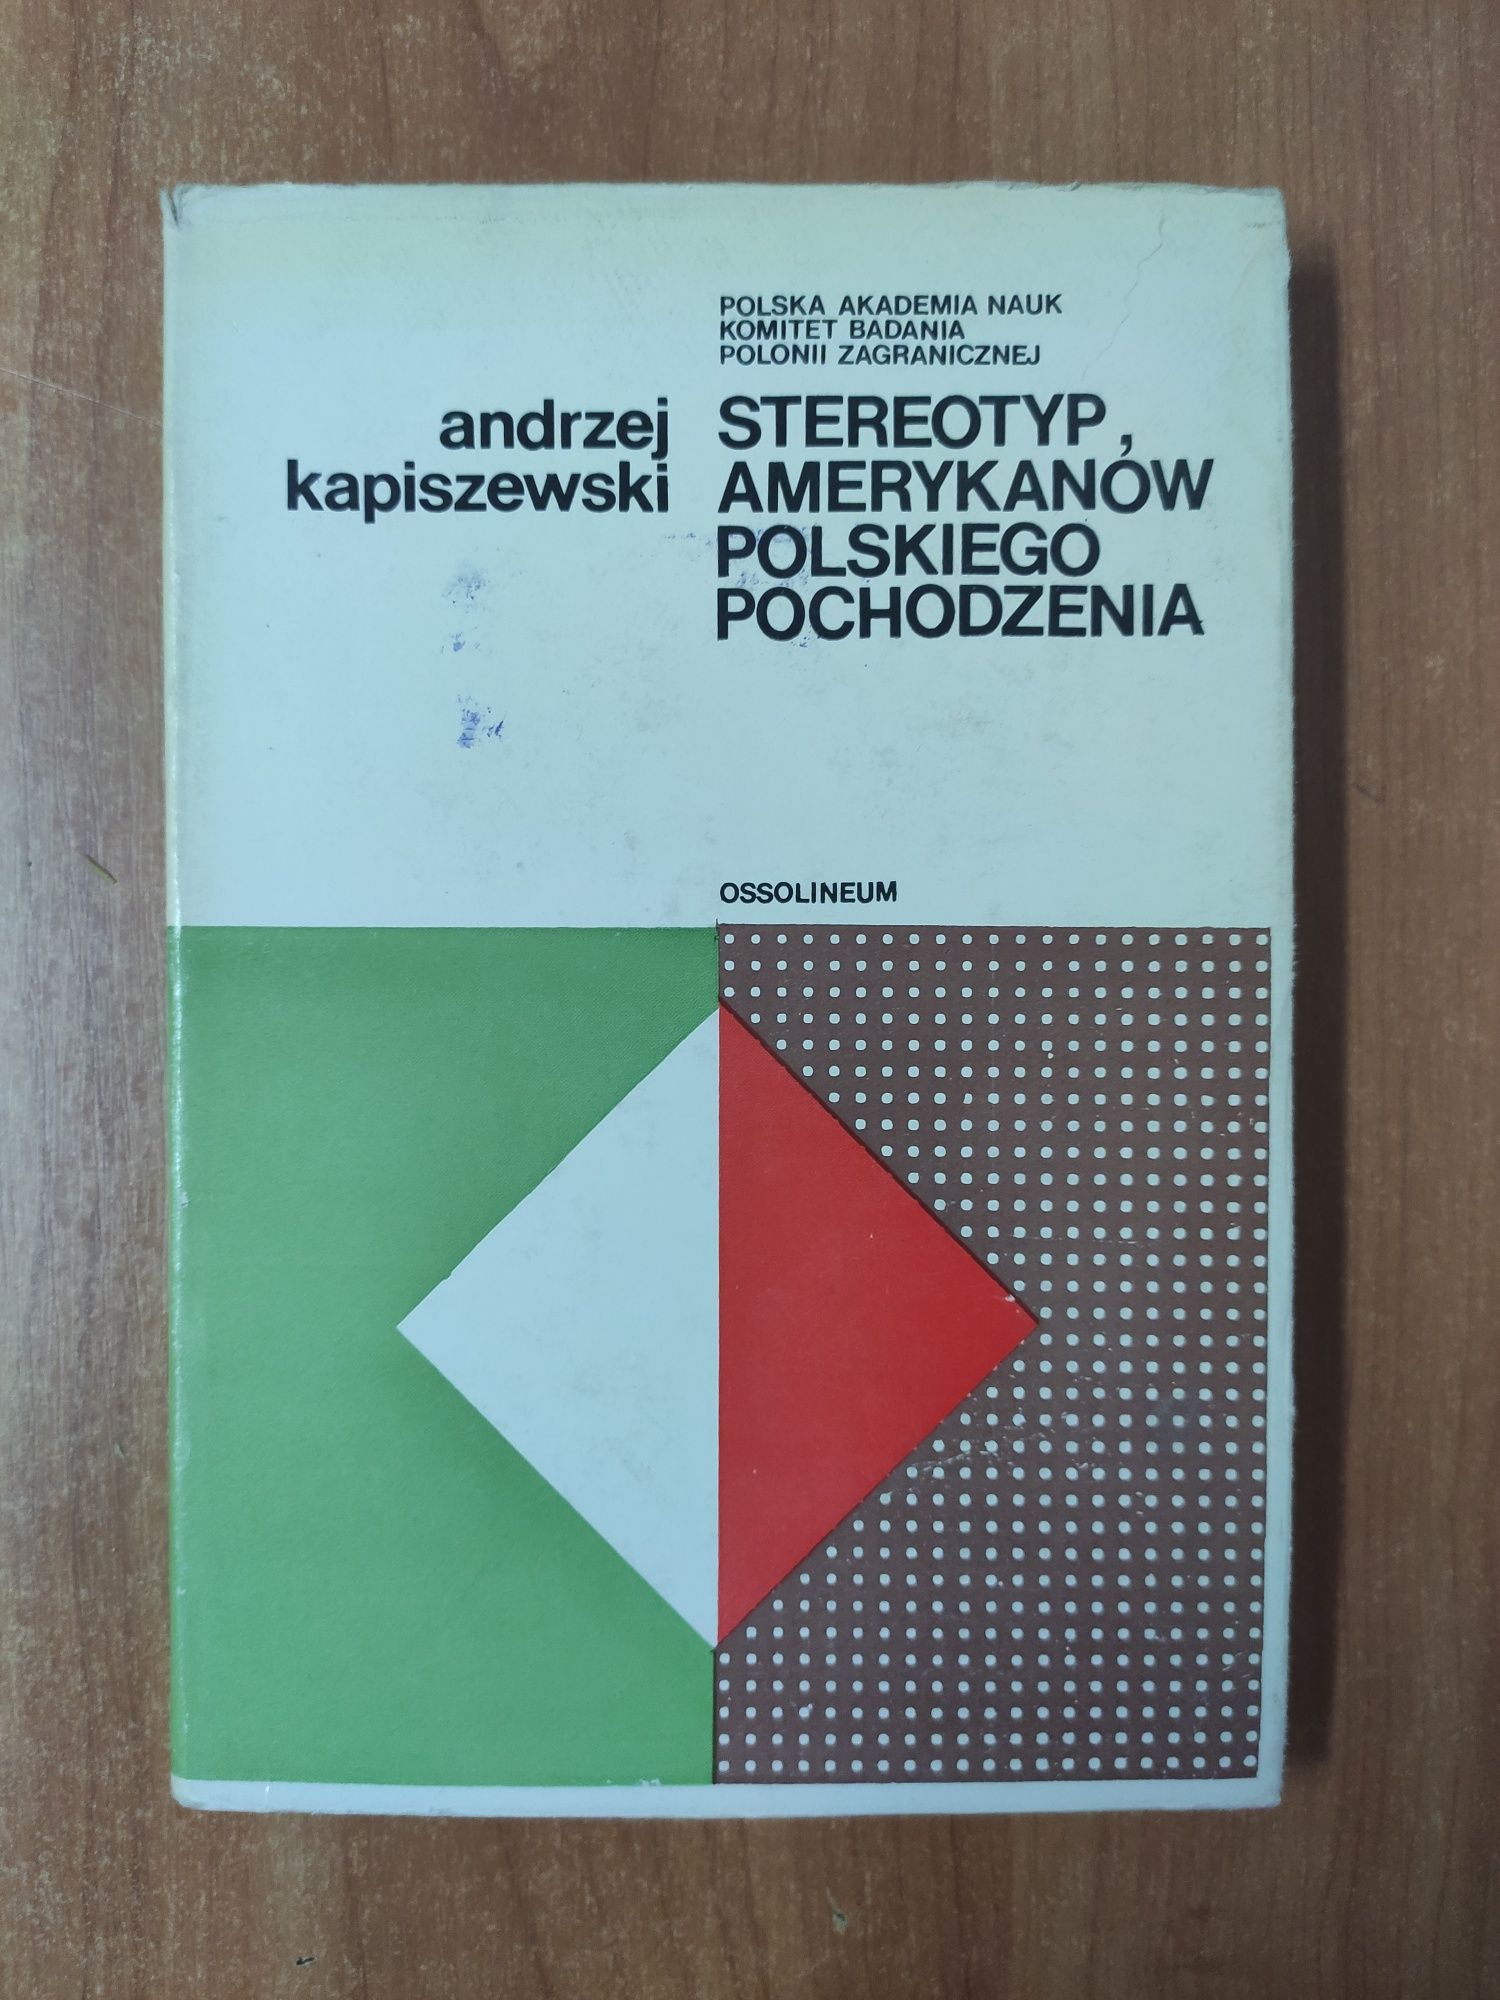 Stereotyp Amerykanów polskiego pochodzenia  A.Kapiszewski